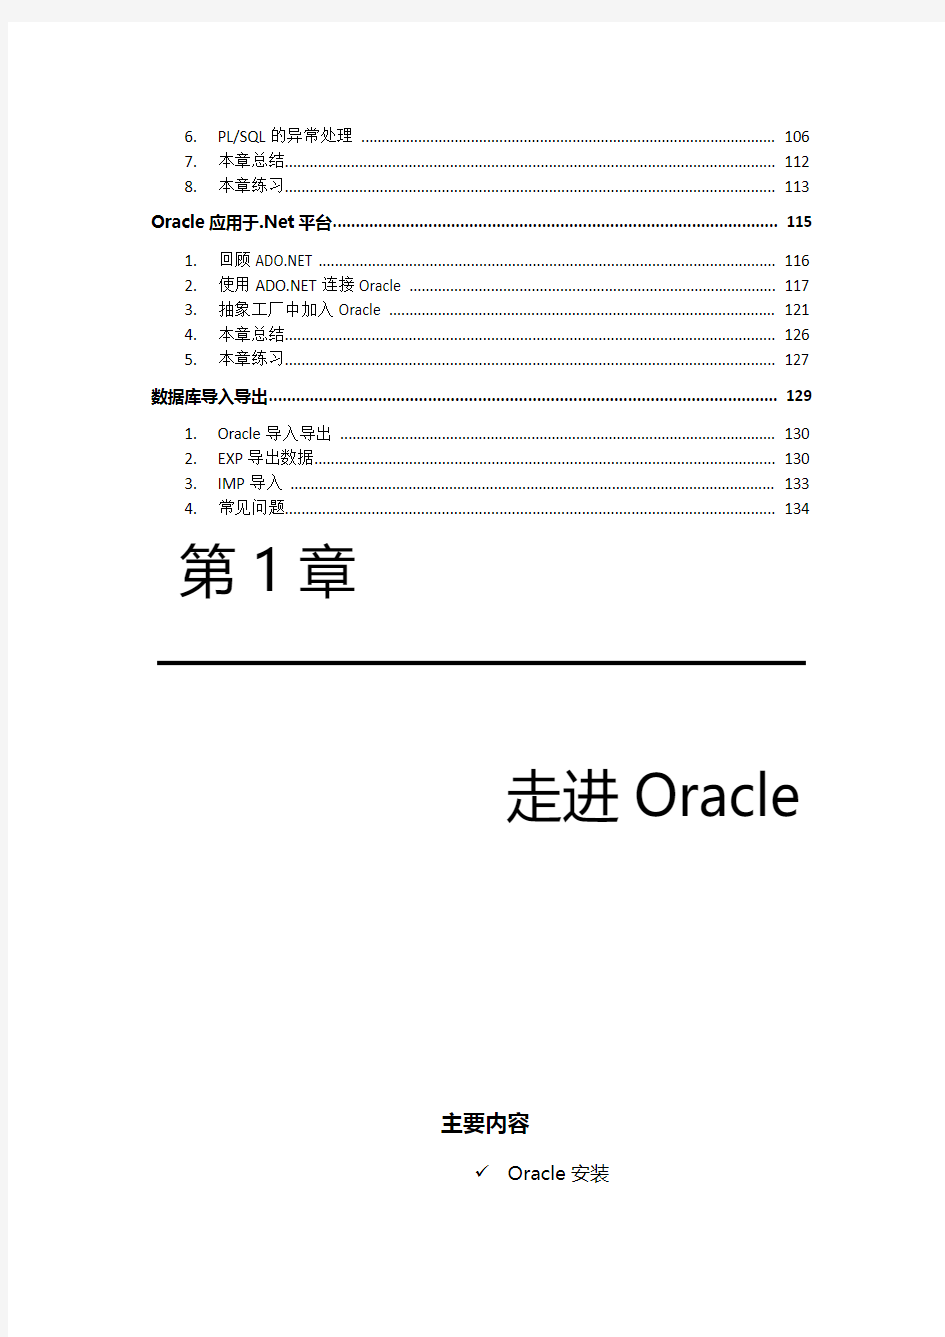 Oracle经典教程(推荐)